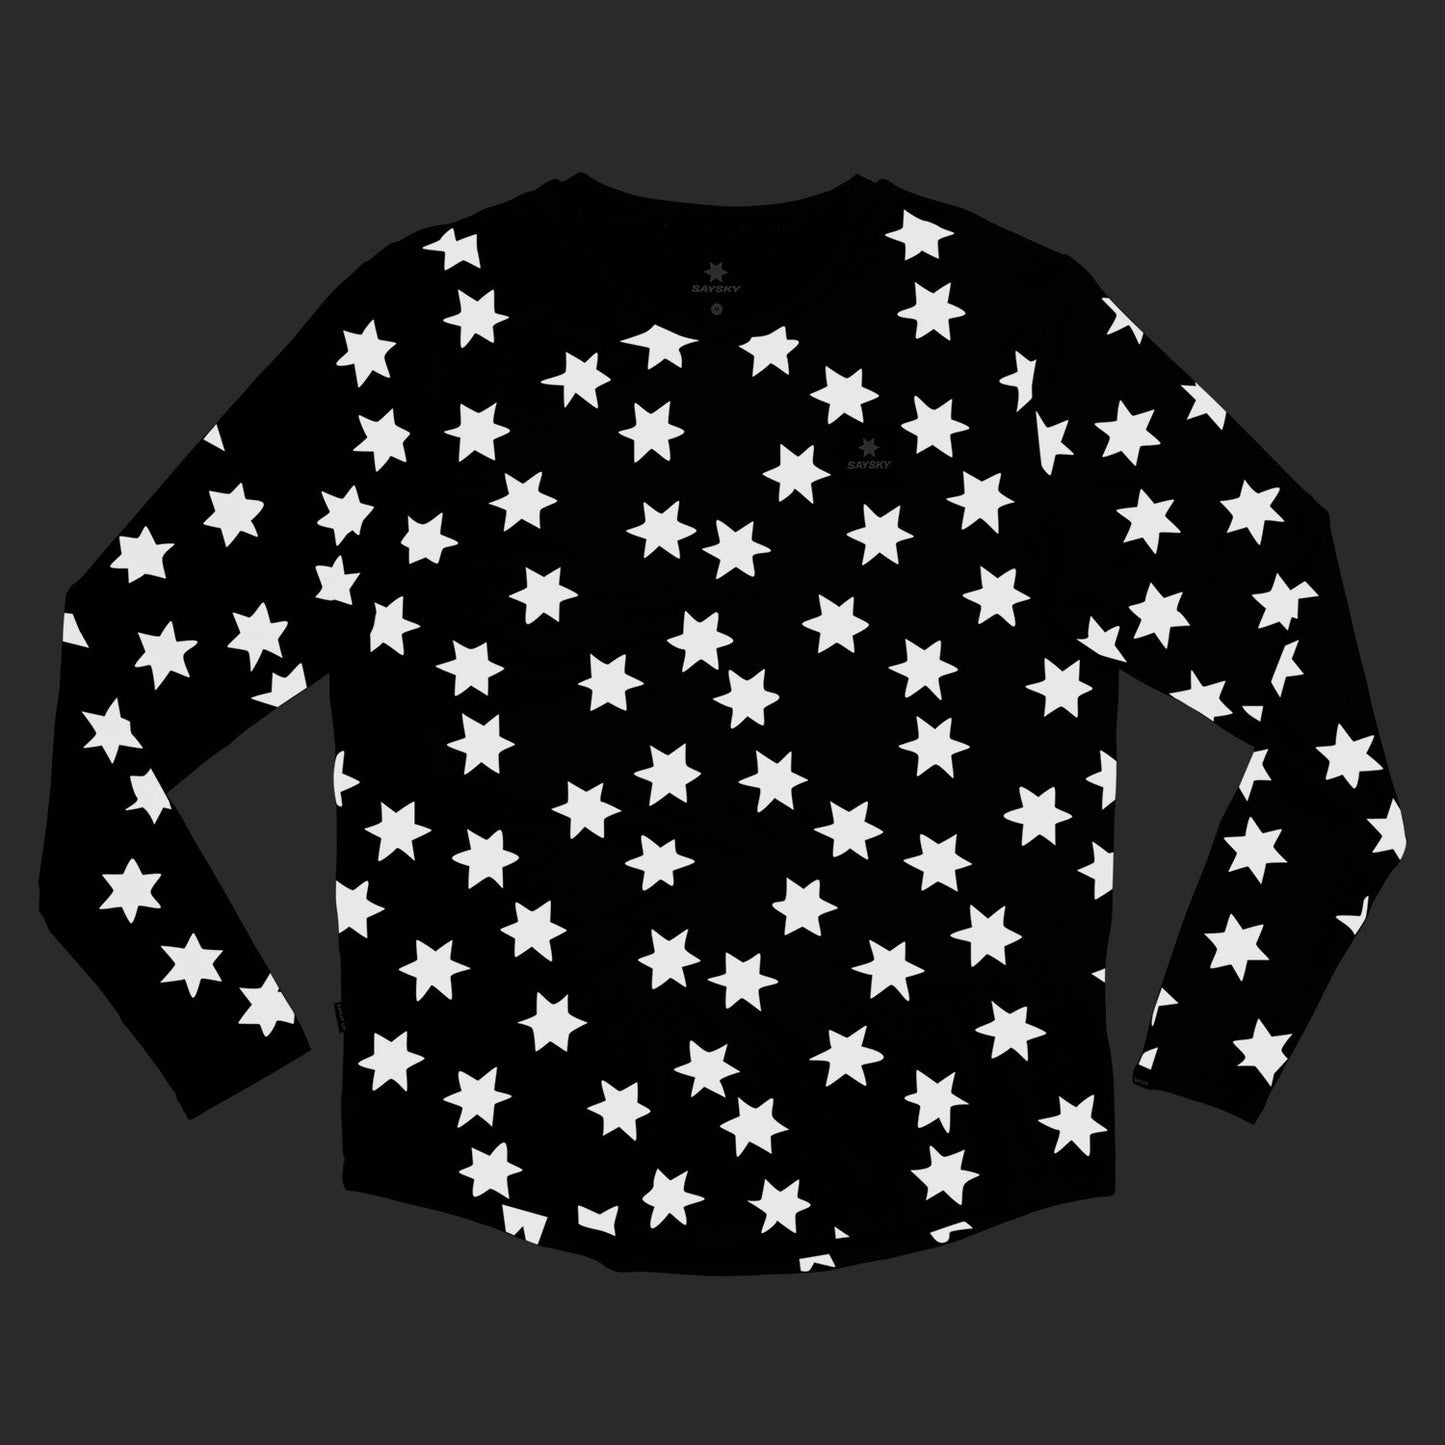 ランニングTシャツ(ロングスリーブ) KMRLS03c1009 Star Reflective Pace Longsleeve - Black [メンズ]